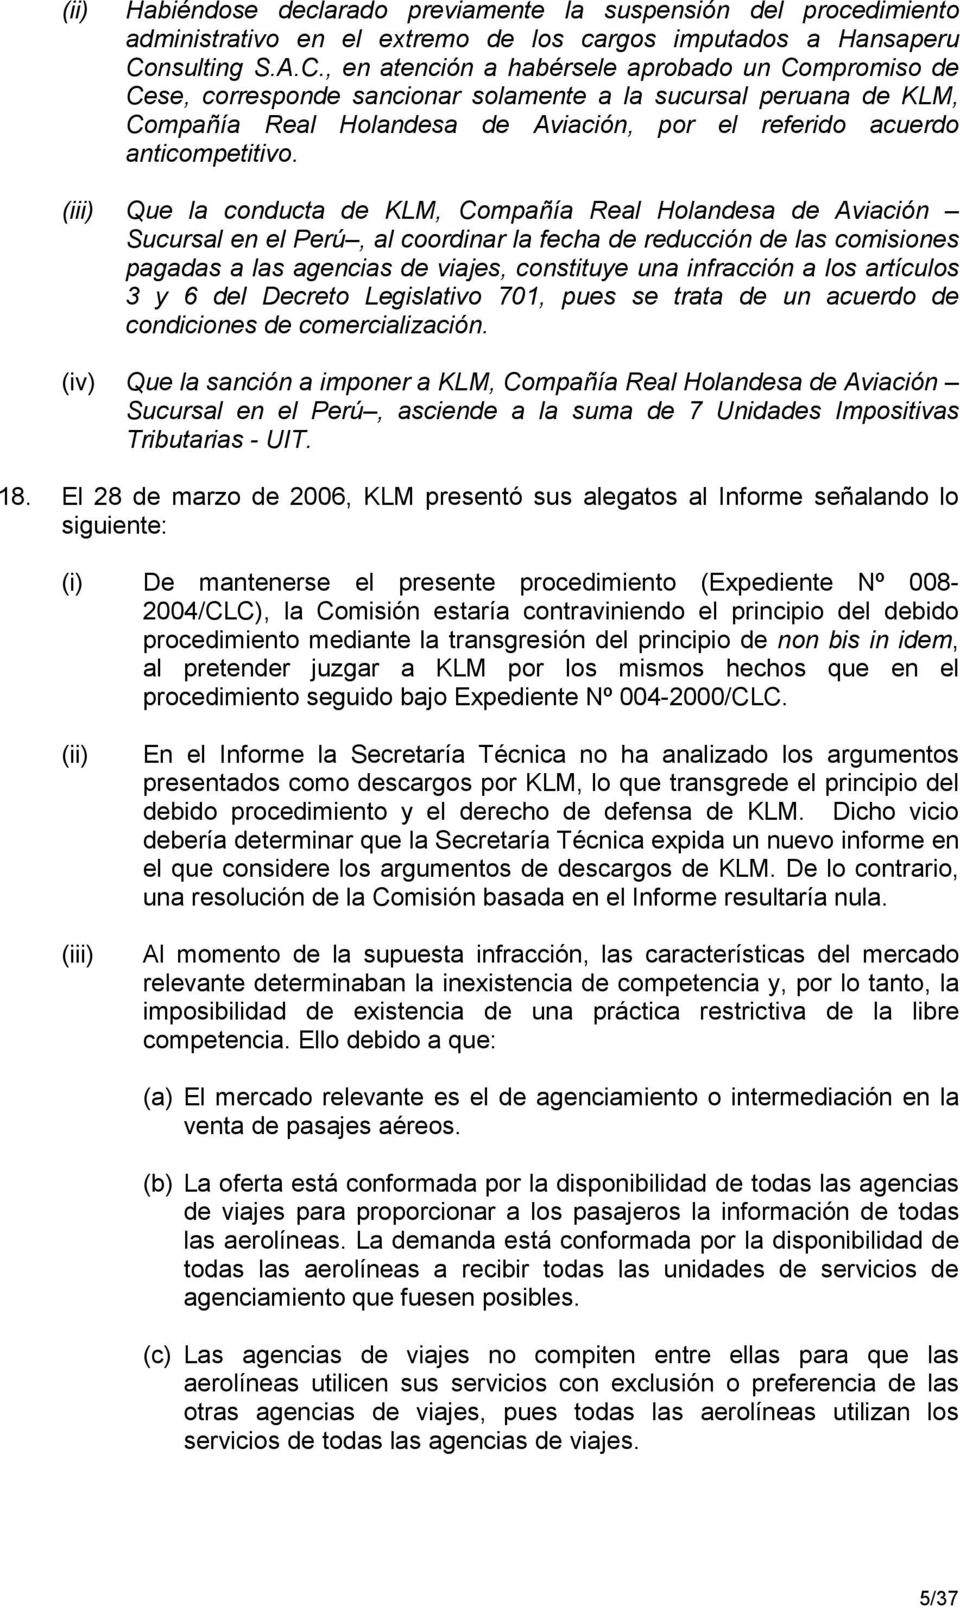 , en atención a habérsele aprobado un Compromiso de Cese, corresponde sancionar solamente a la sucursal peruana de KLM, Compañía Real Holandesa de Aviación, por el referido acuerdo anticompetitivo.